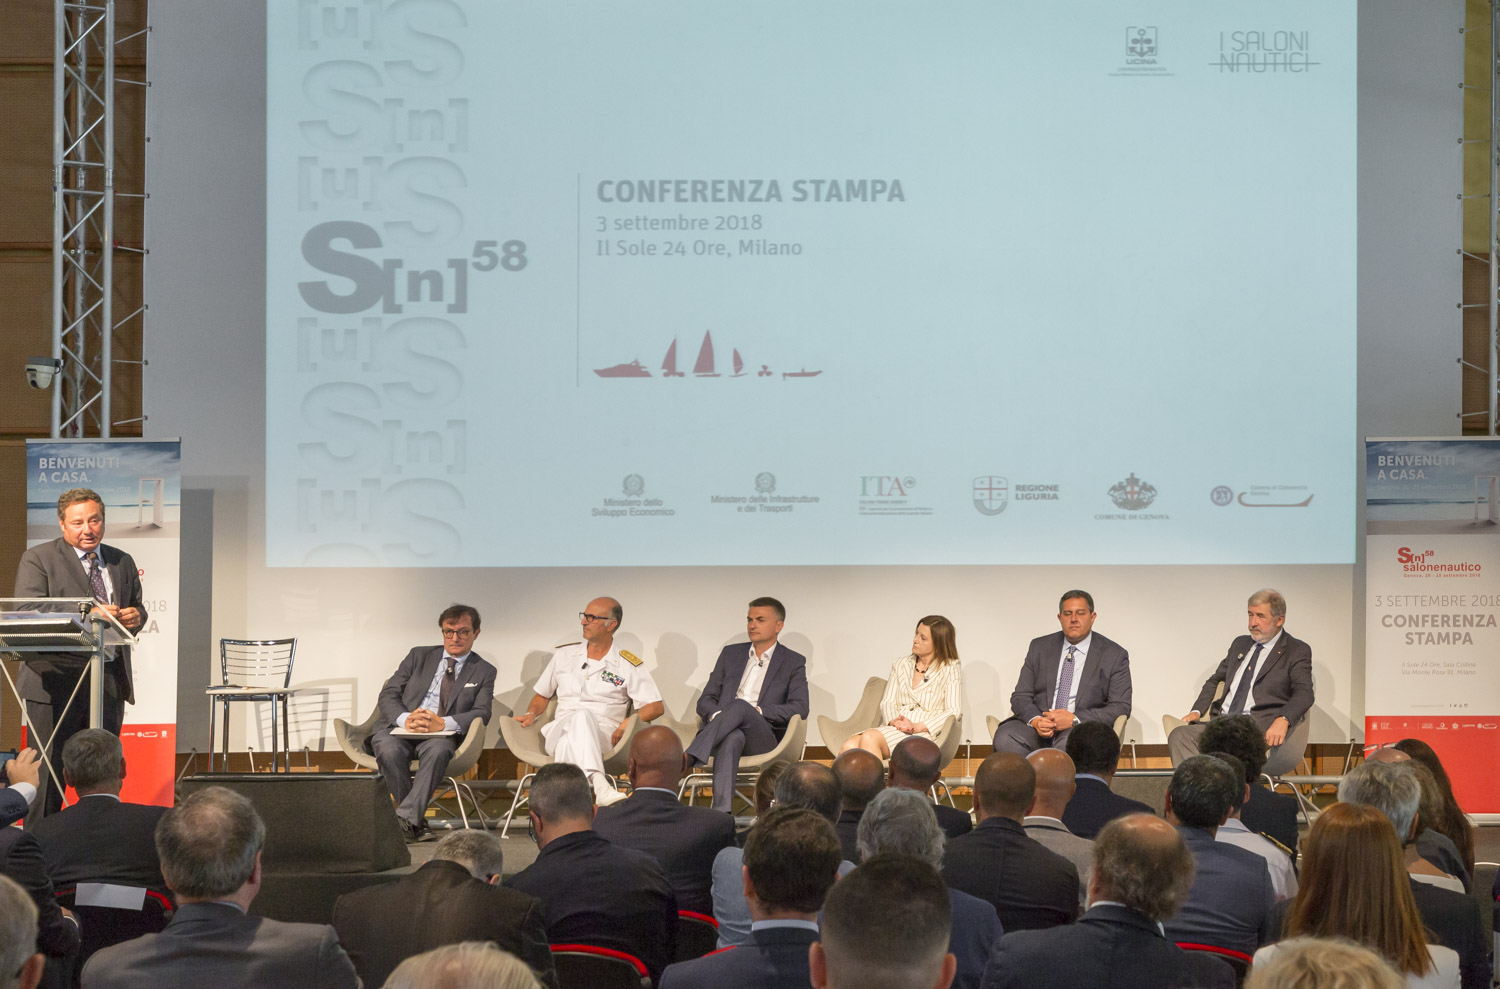 La conferenza stampa di presentazione del 58° Salone Nautico di Genova